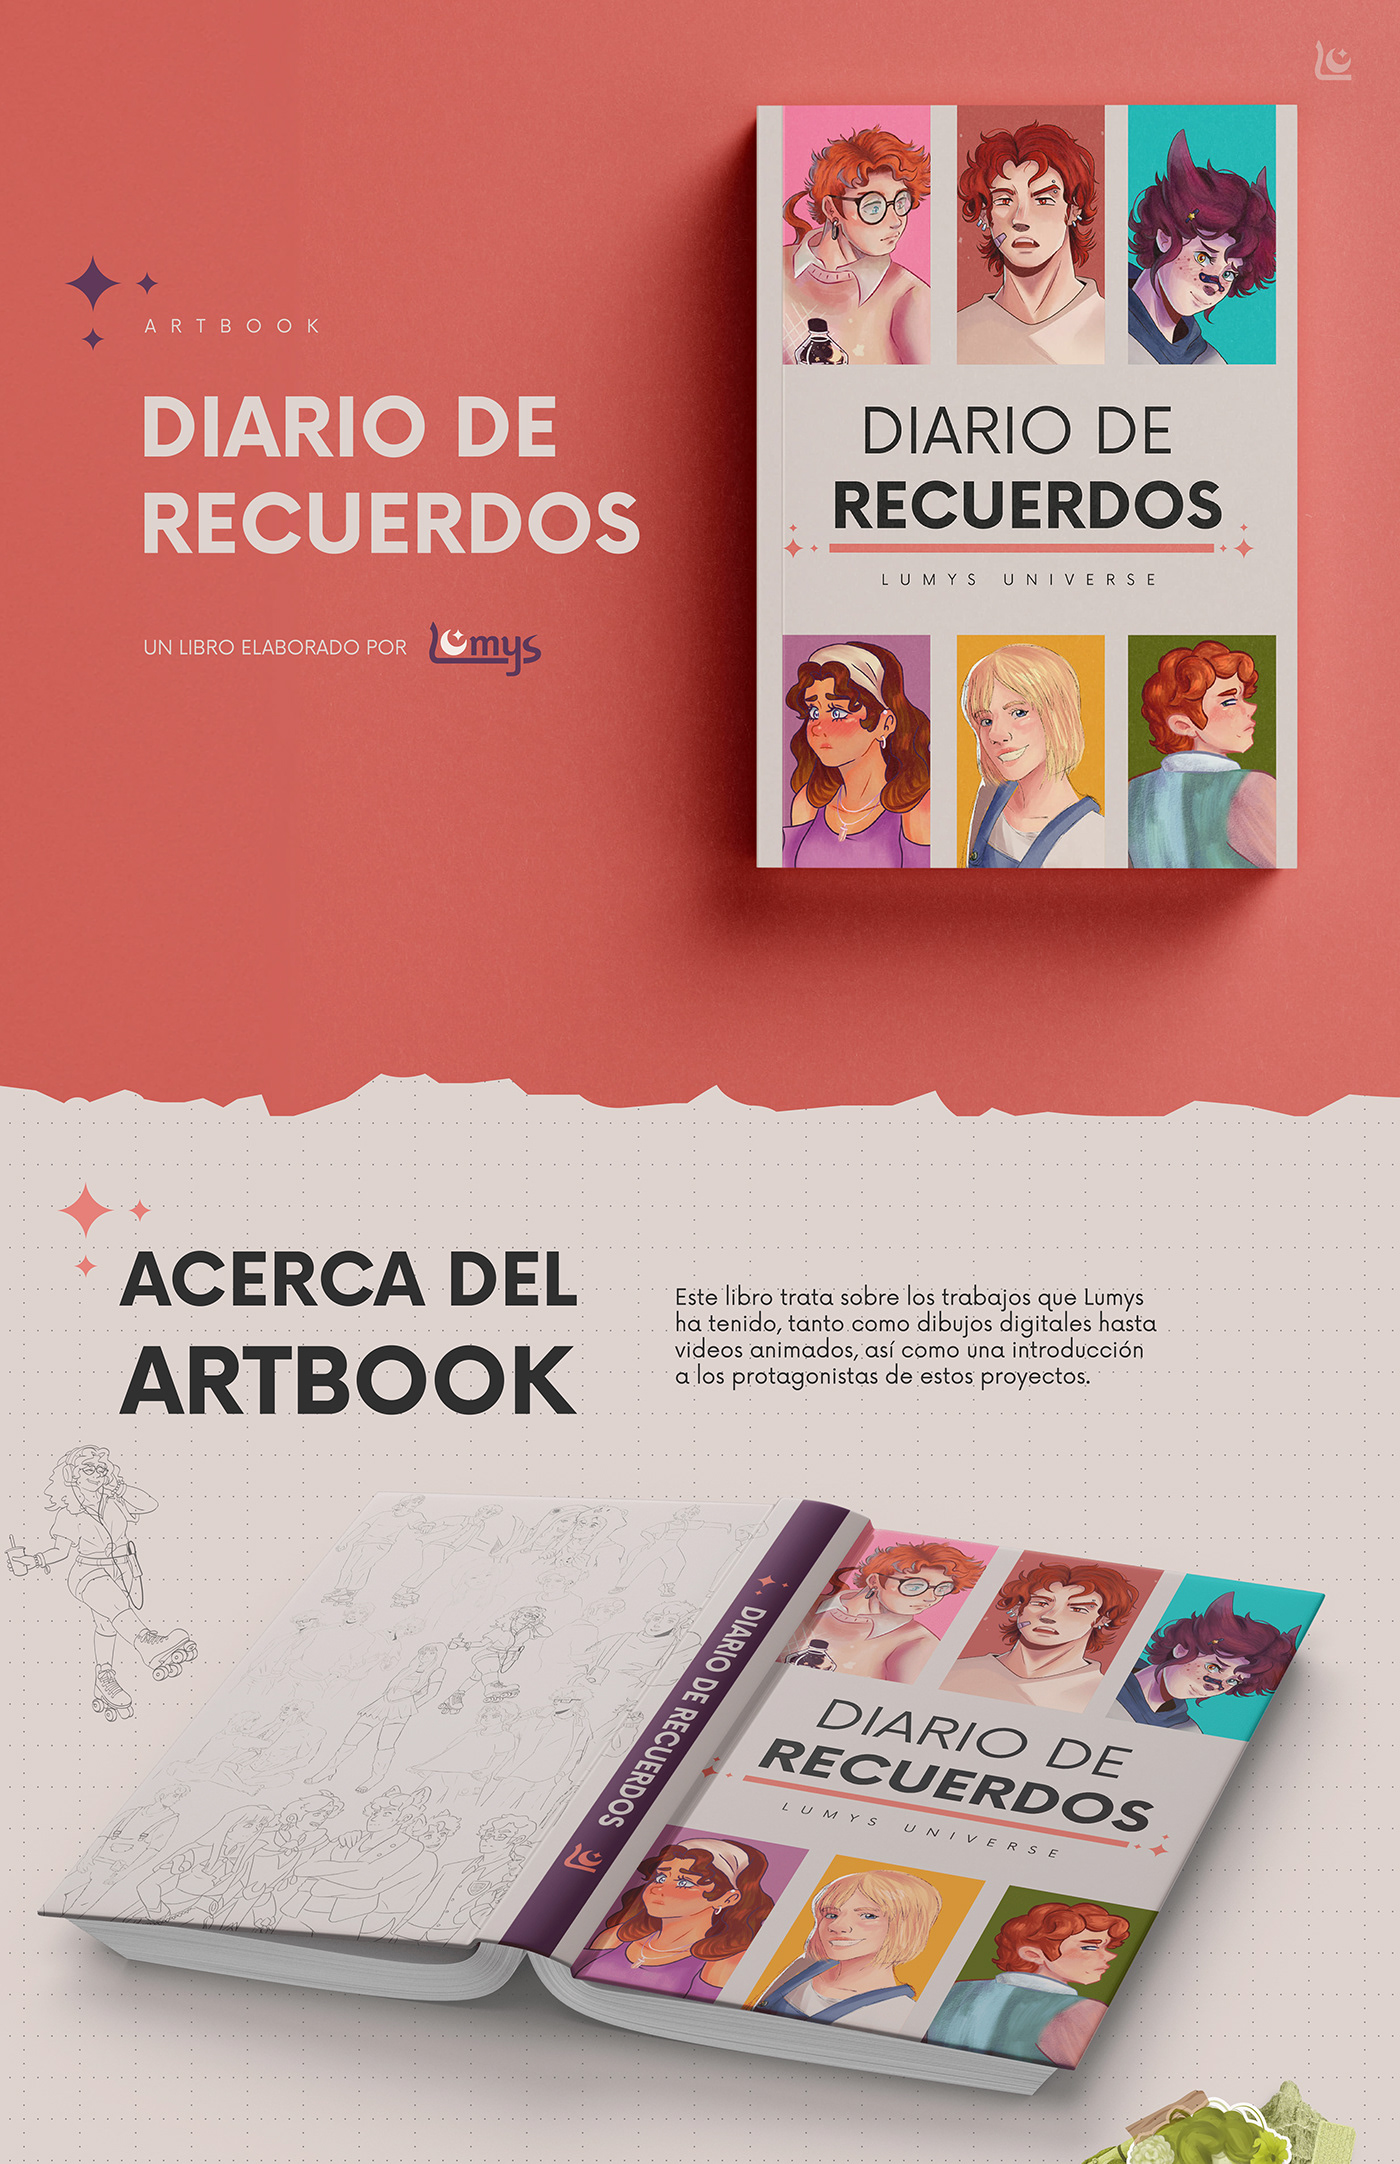 Illustrator ilustracion Digital Art  Drawing  artwork Character design  sketch digital illustration Graphic Designer artbook